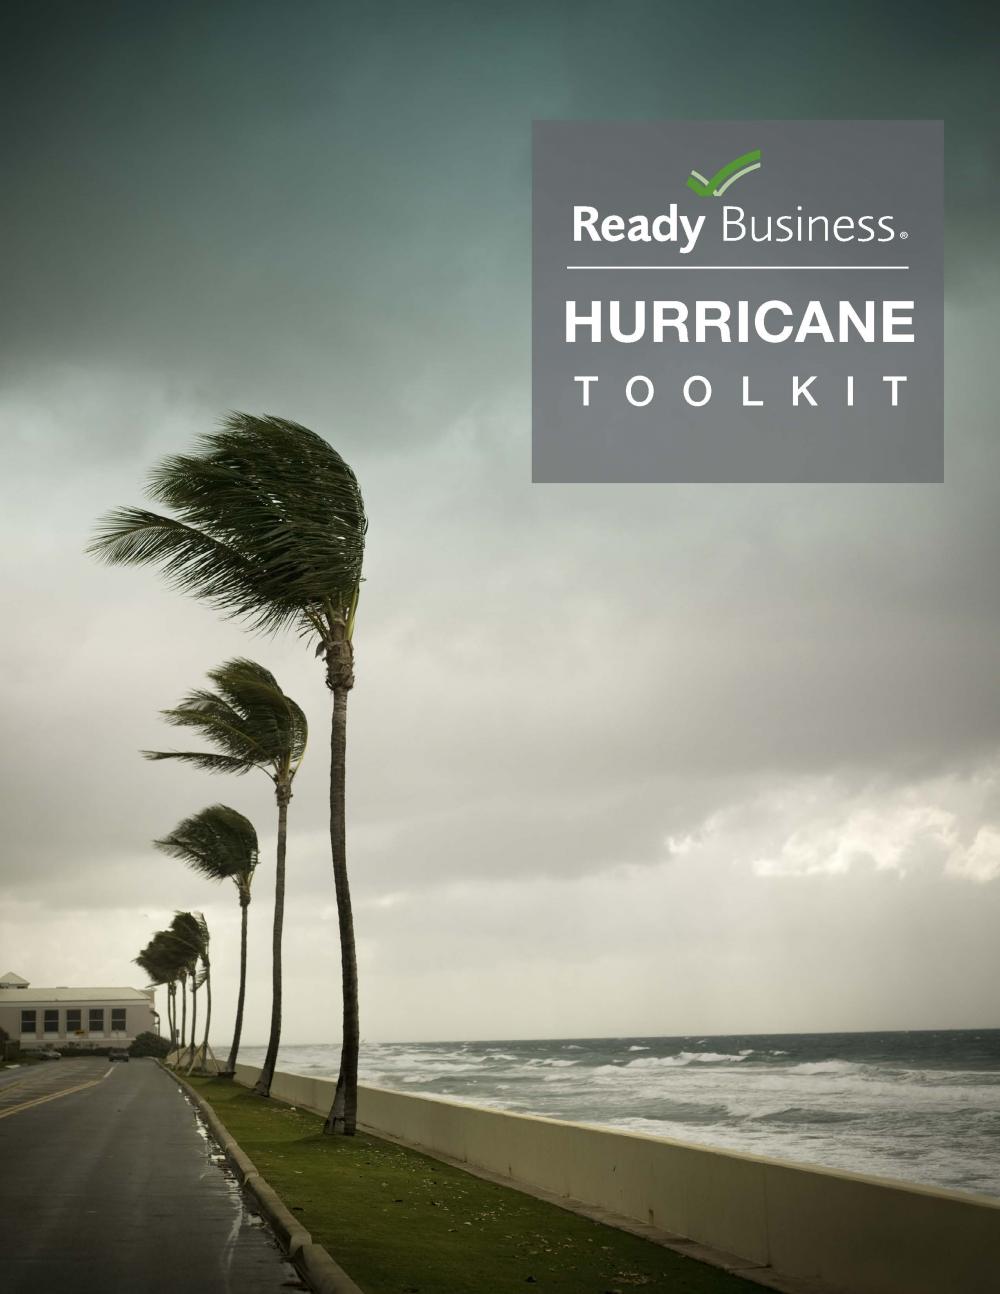 Foto del cover del manual con palmas doblándose por los vientos de la tempestad